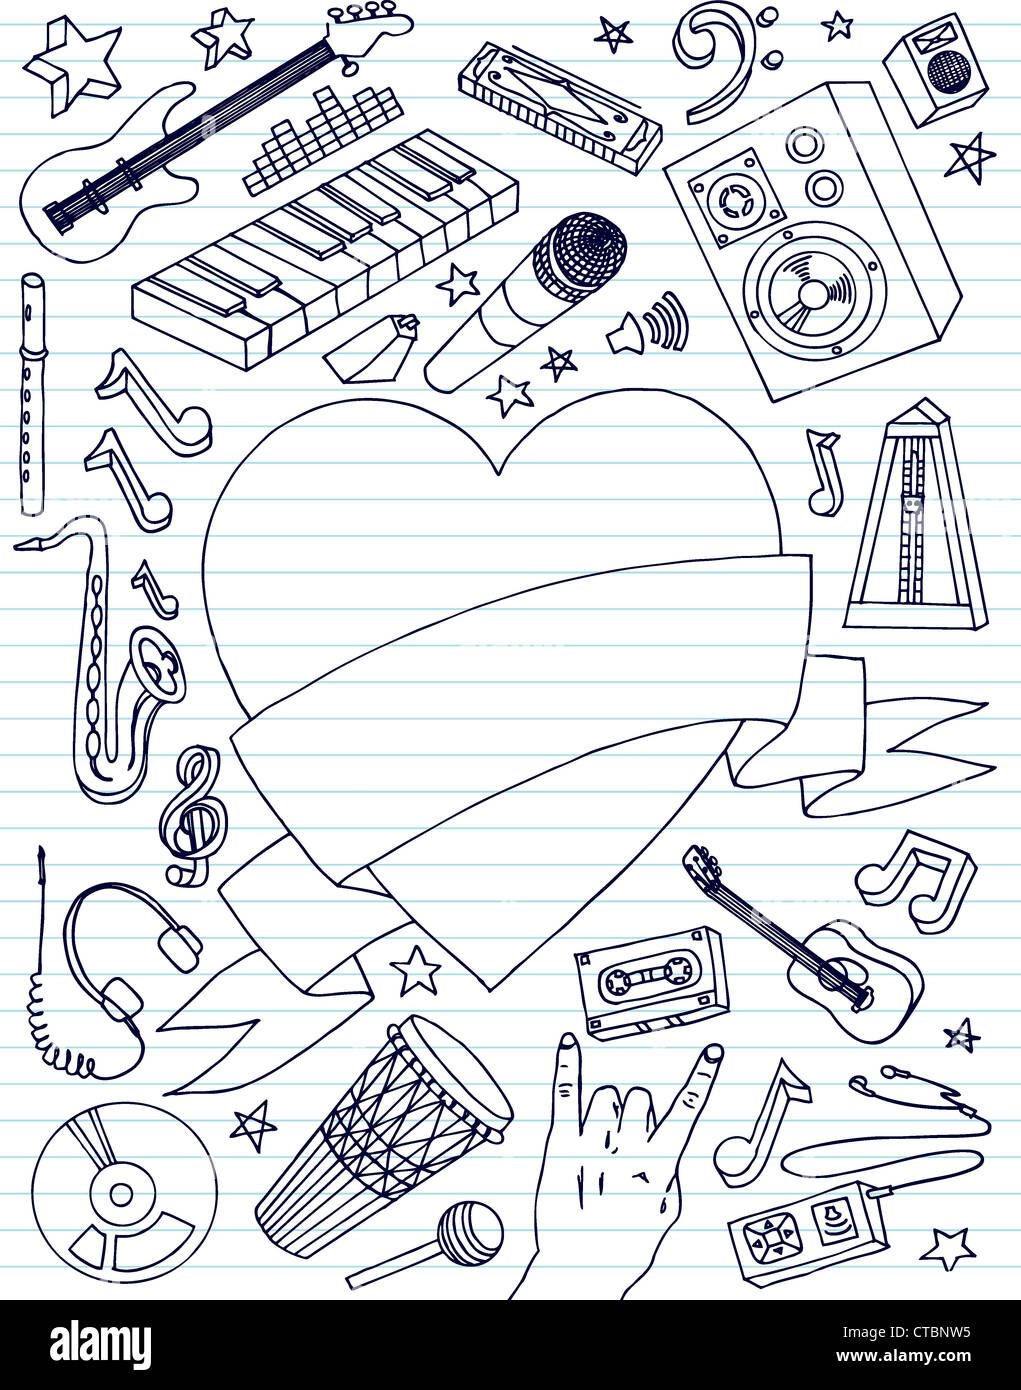 Handgezeichnete Musik Kritzeleien mit großem Herz Banner. Stockfoto